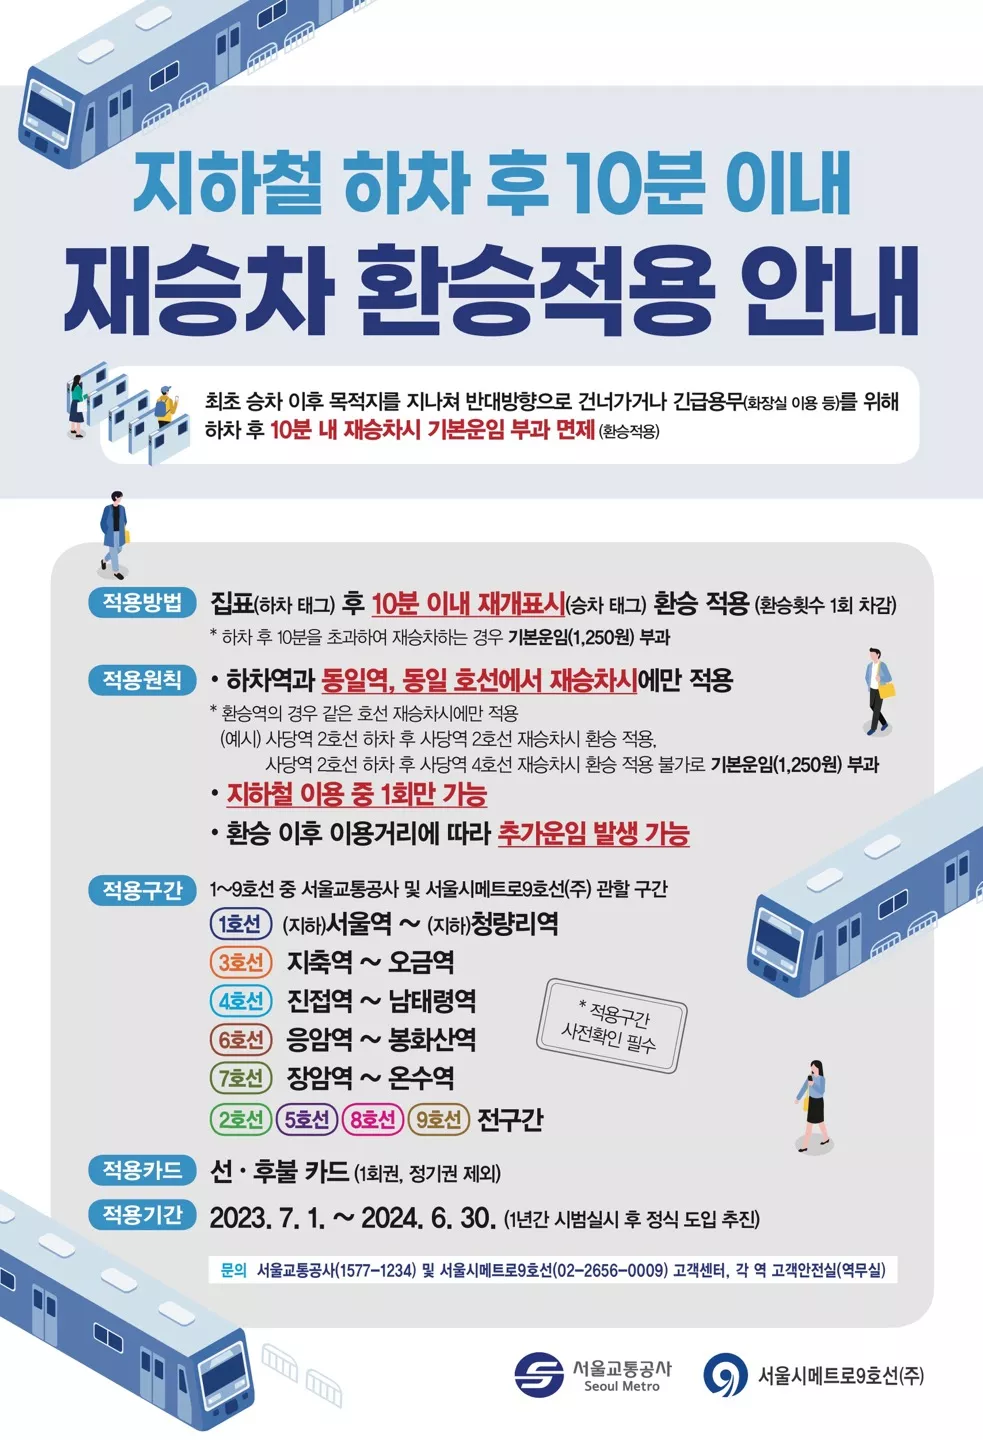 Сеул отменяет дополнительную плату за проезд в метро для тех, кто пересаживается в течение 10 минут